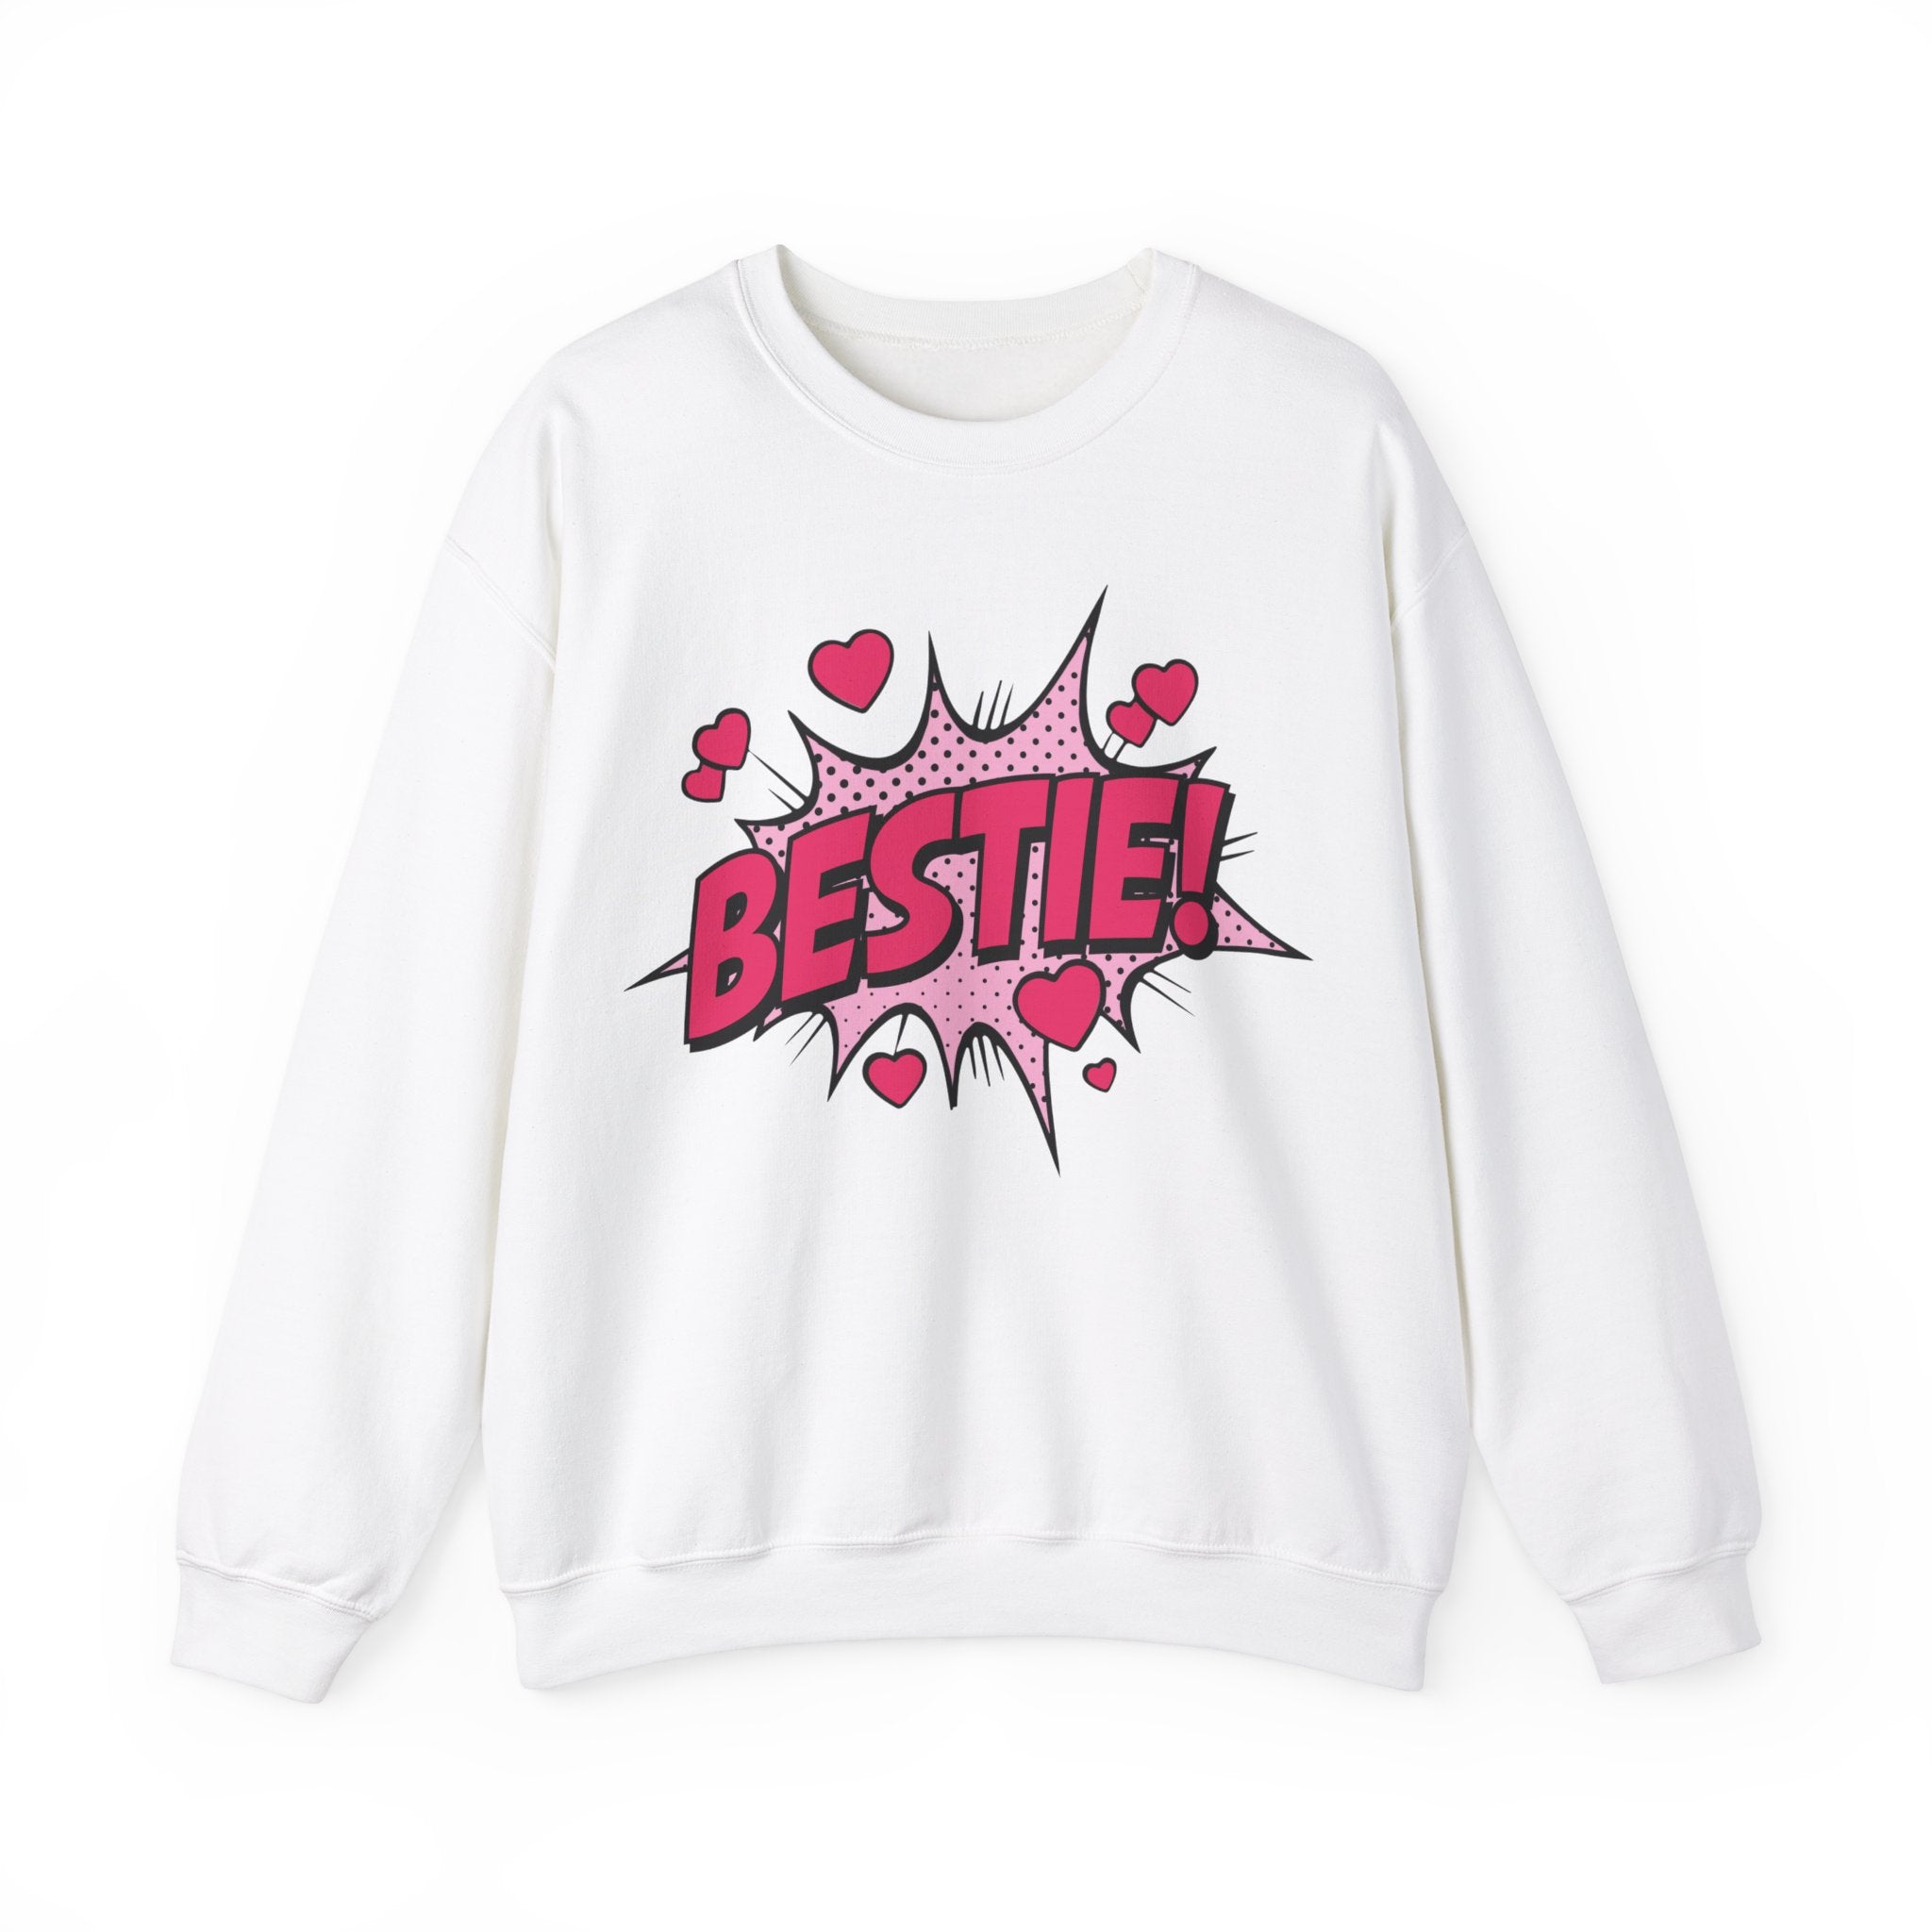 Bestie Sweater